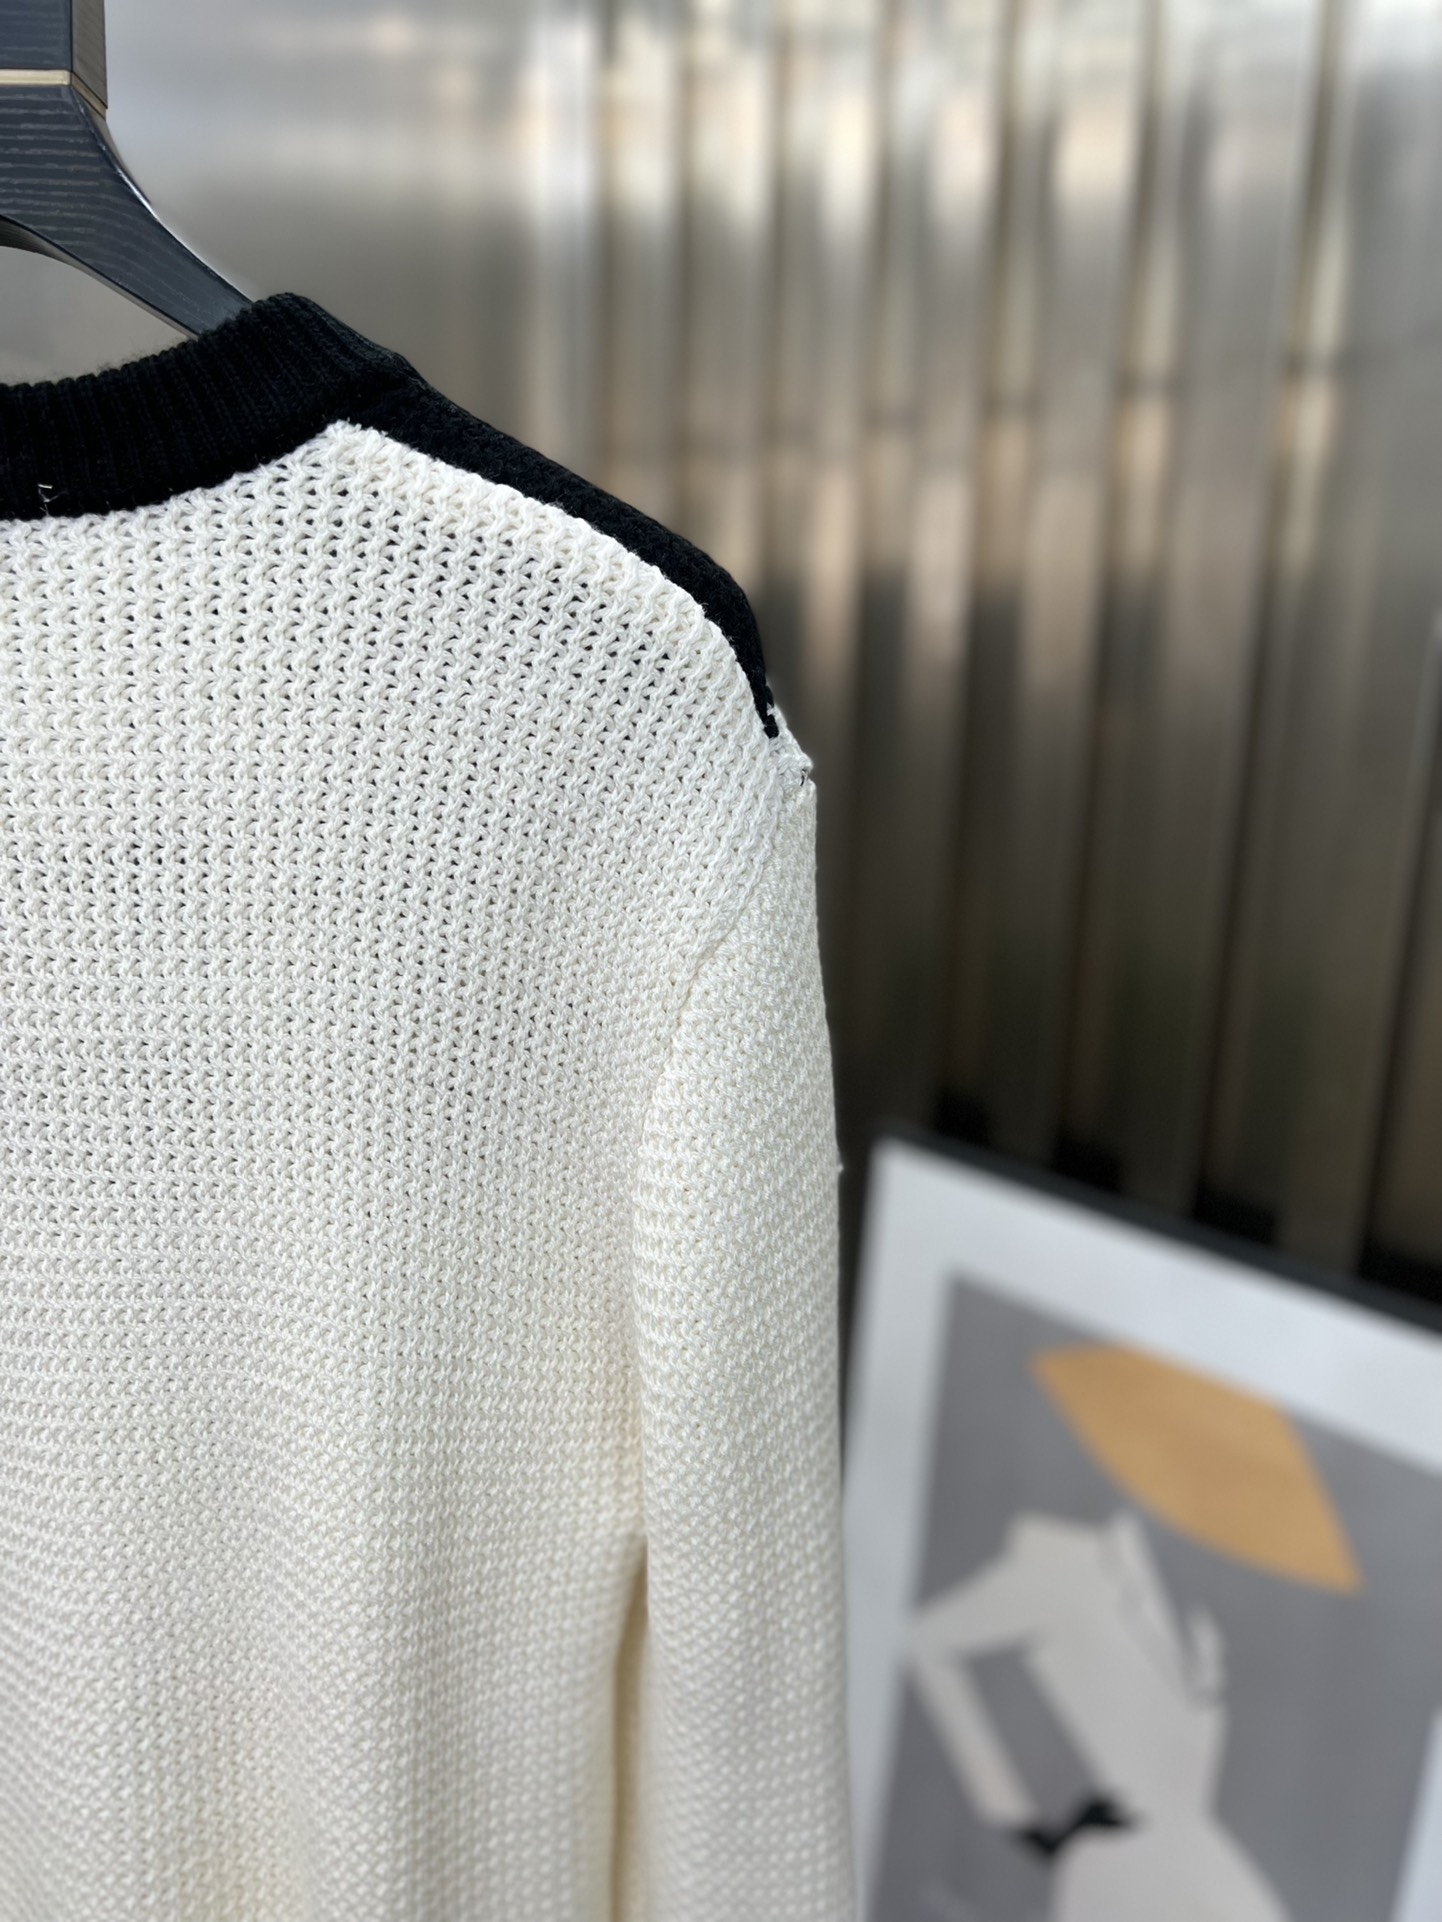 ヴァレンティノ スパイクコピー 暖かい セーター ウール 長袖 無地 柔らかい ゆったり ホワイト_8